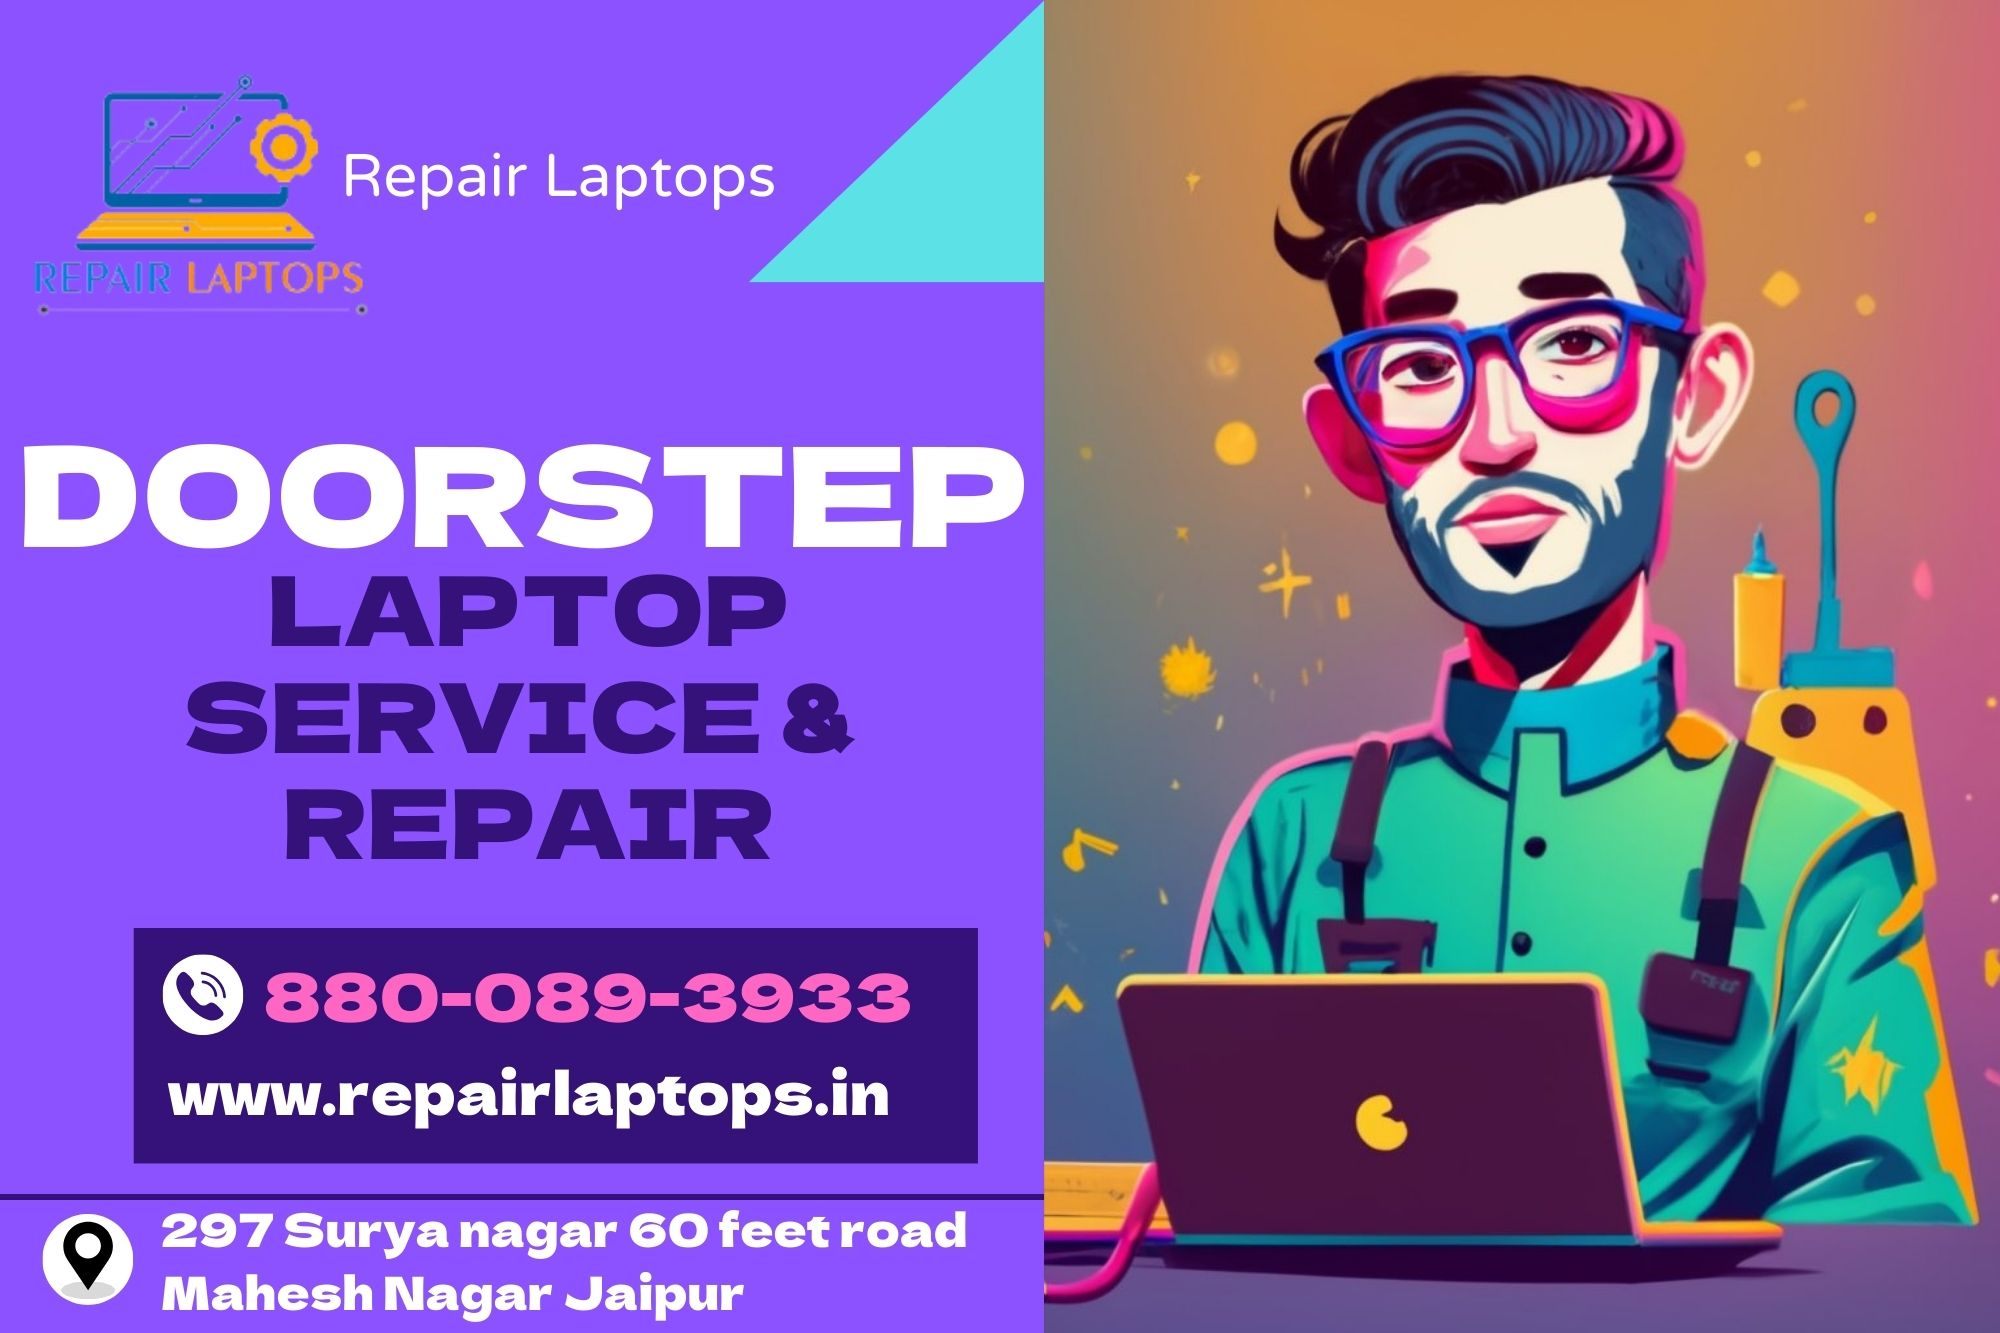 Laptop Repair Service